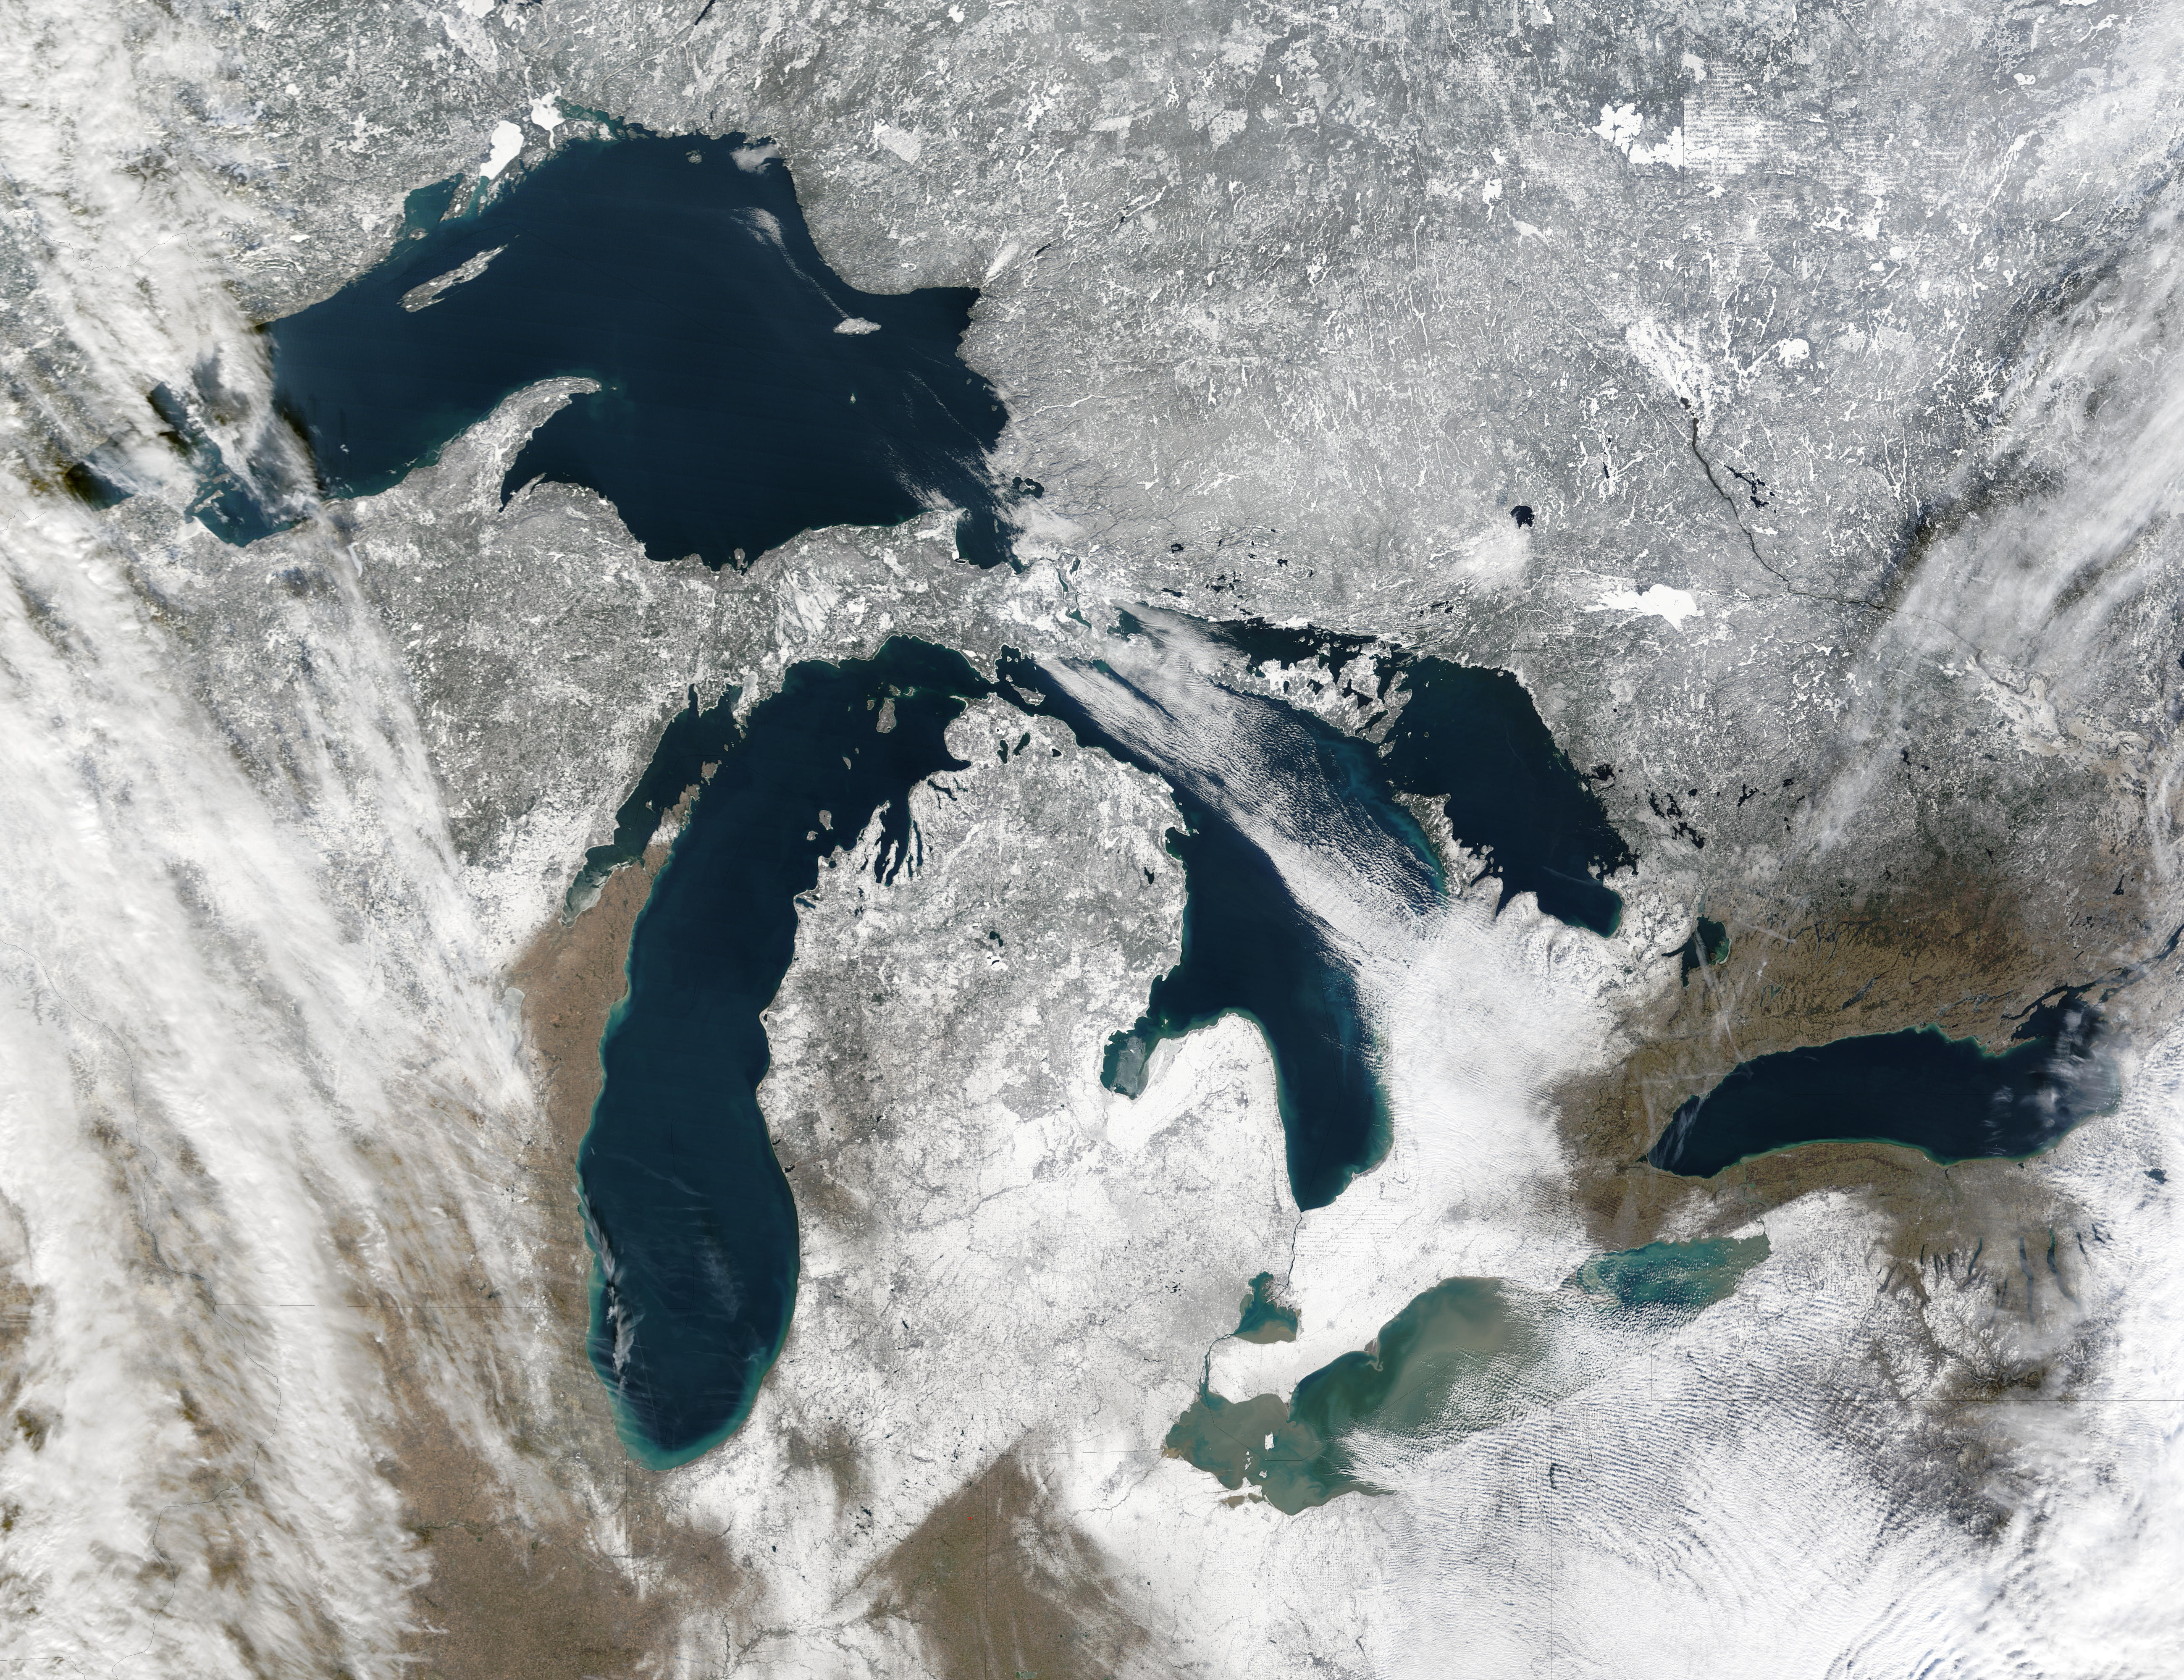 NASA Visible Earth: The Great Lakes